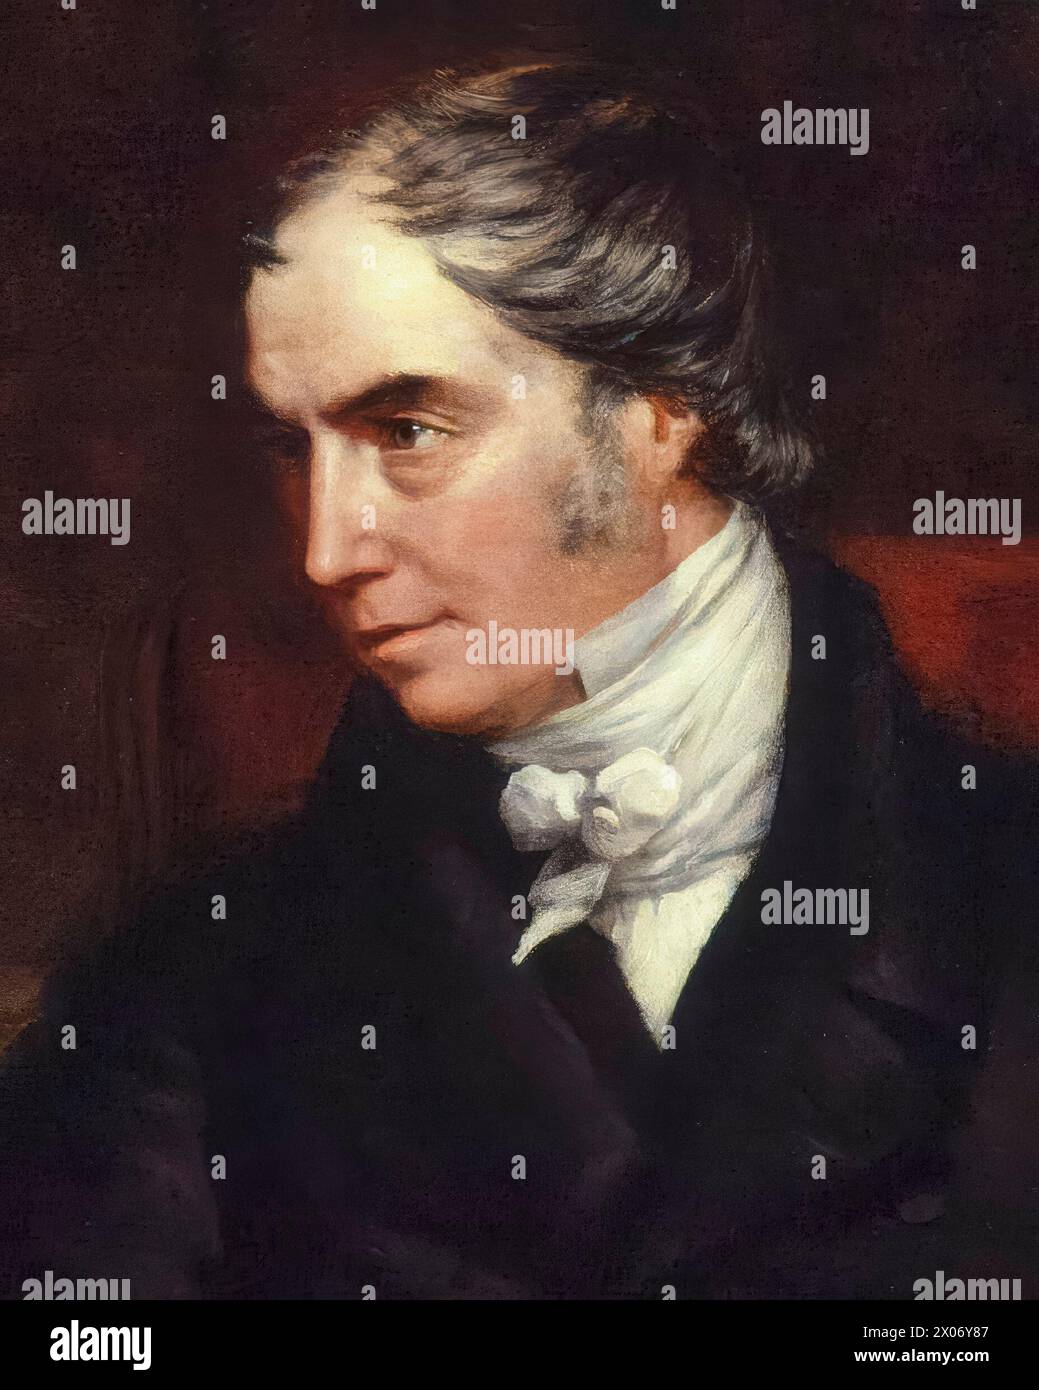 George Hamilton-Gordon, 4e comte d'Aberdeen (1784-1860), titré 'Lord Haddo', premier ministre du Royaume-Uni de 1852 à 1855, portrait peint à l'huile sur toile par John Partridge, vers 1847 Banque D'Images